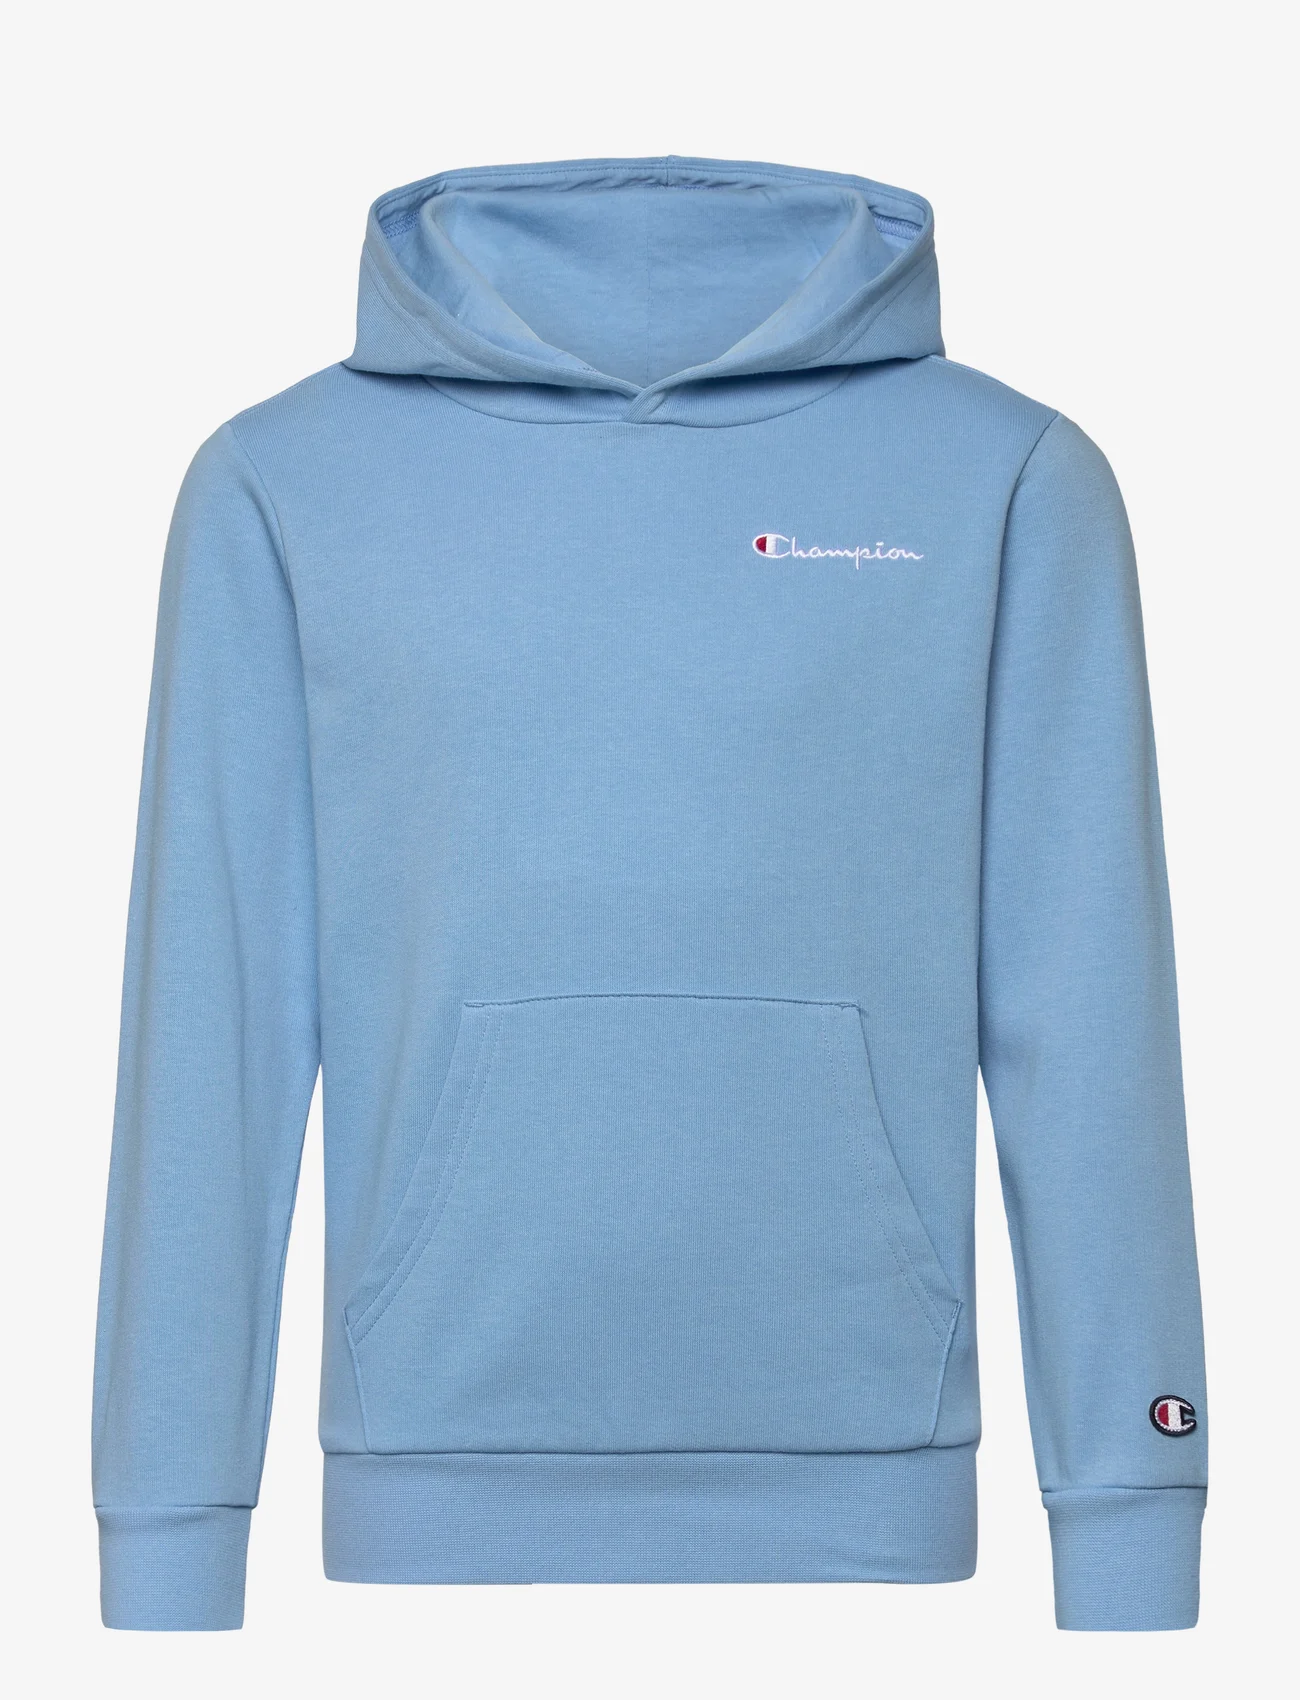 Champion - Hooded Sweatshirt - hoodies - alaskan blue - 0